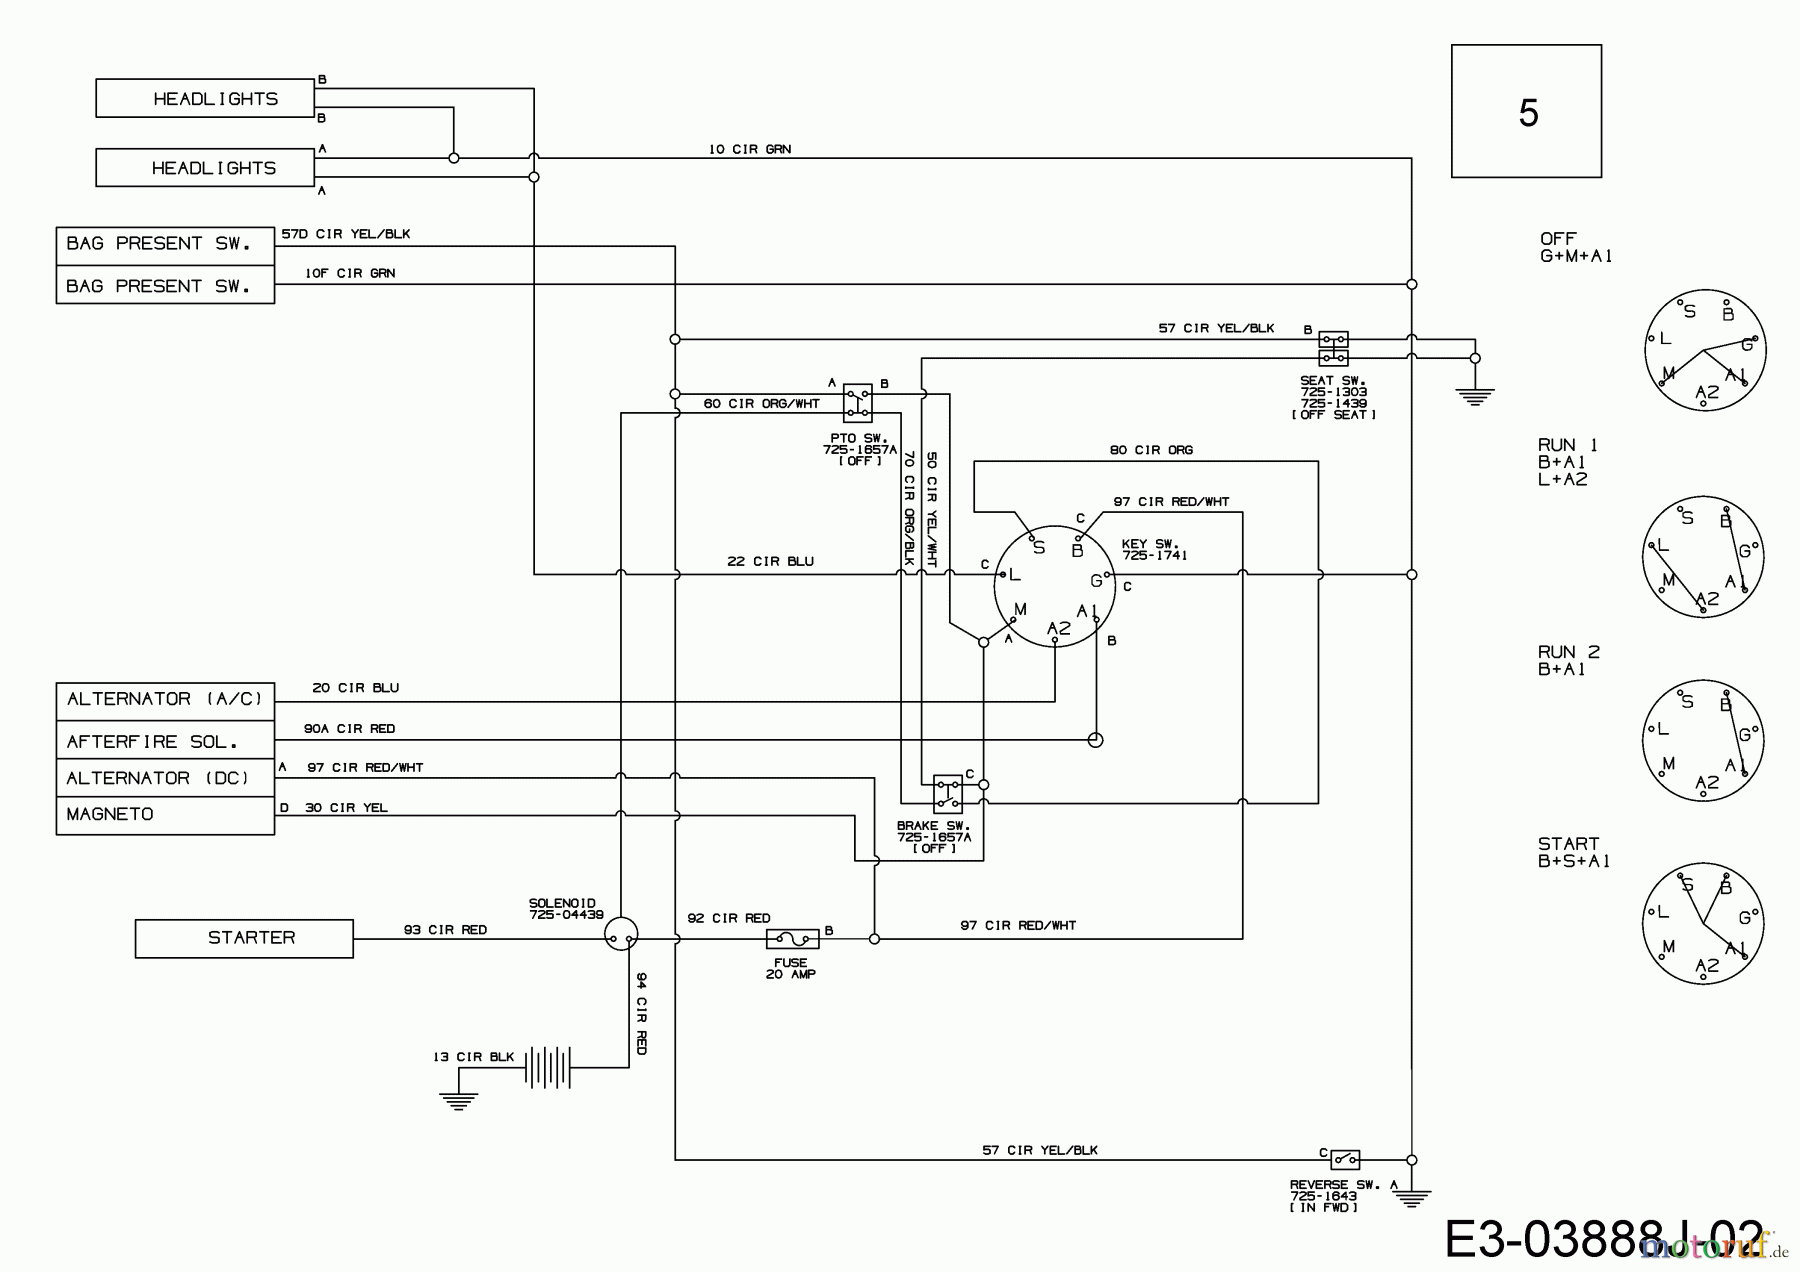  Bestgreen Rasentraktoren BG 92 RBK 13B776SE655 (2021) Schaltplan